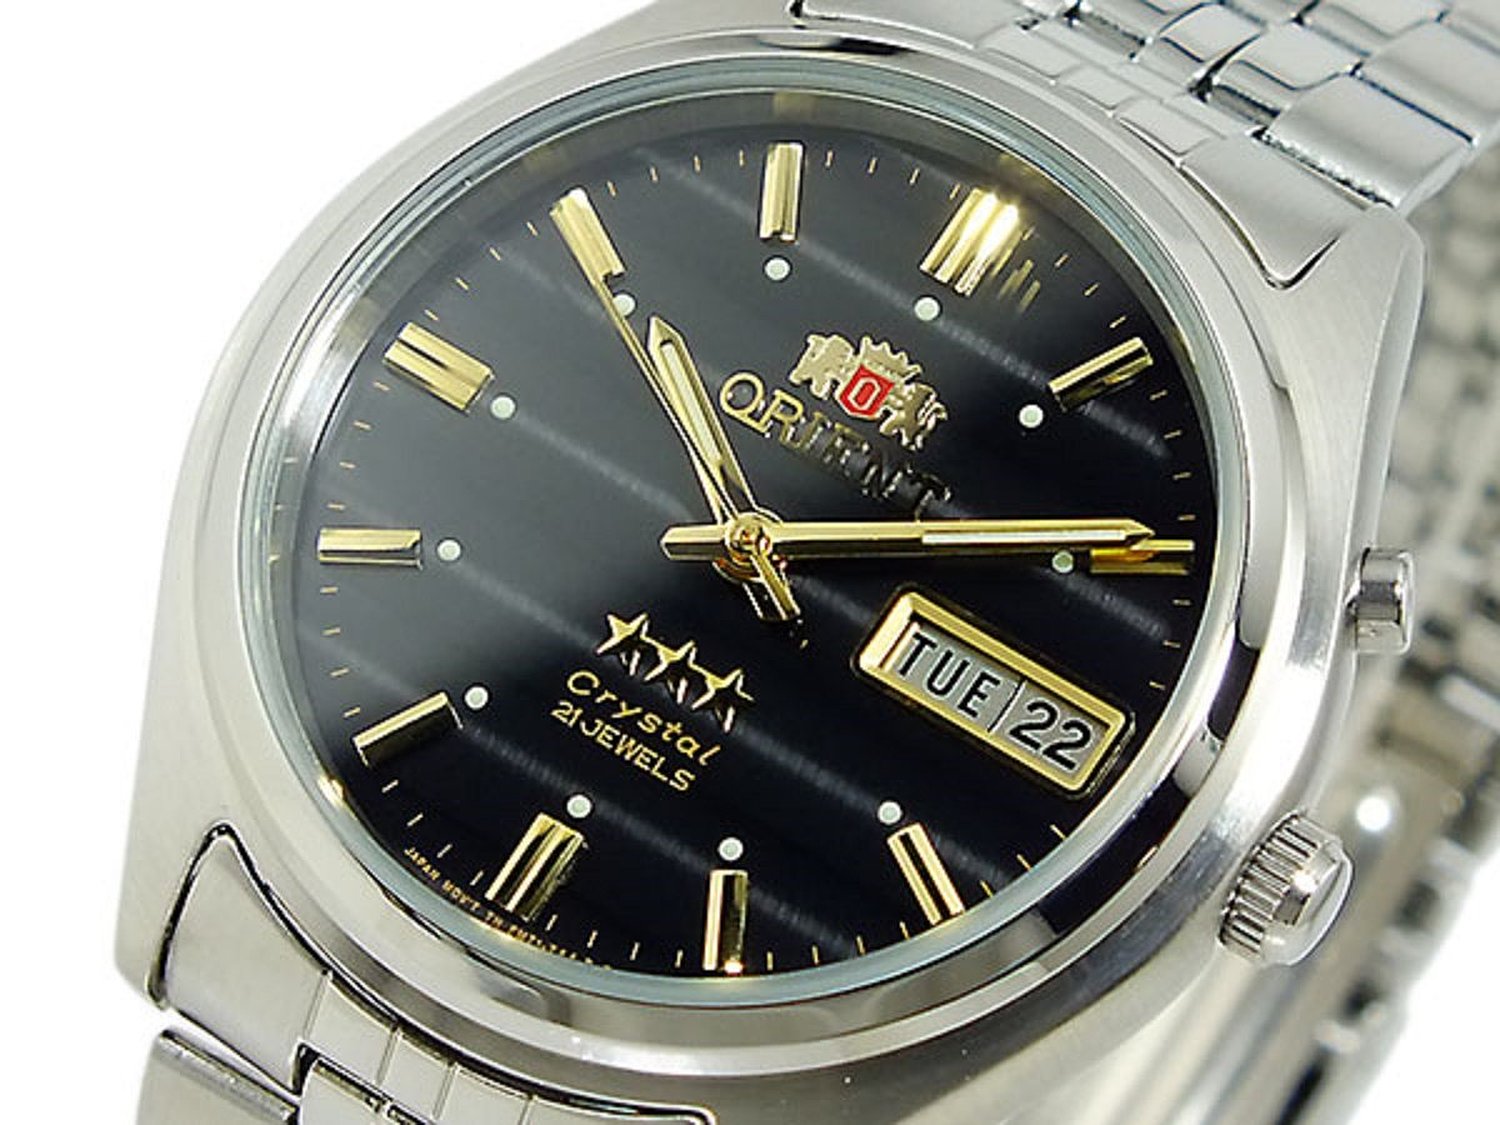 Купить часы ориент в спб. Часы Orient 469wa1-71 CA. Ориент 469wa1. Orient Crystal 21 Jewels 469wa1-71 CA. Orient Crystal 21 часы мужские механические.